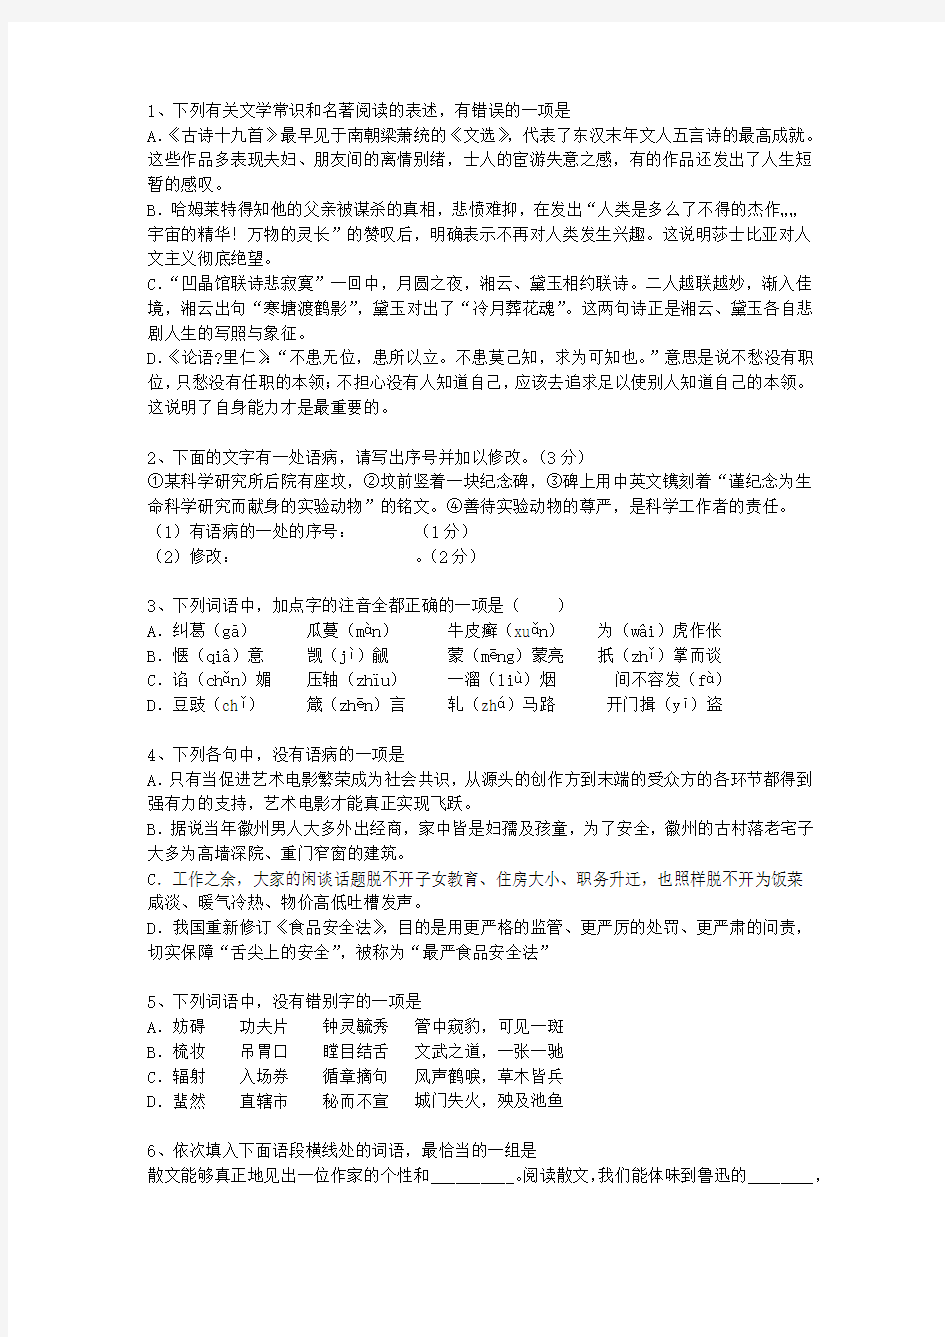 2014河北省高考语文试题及详细答案最新考试试题库(完整版)